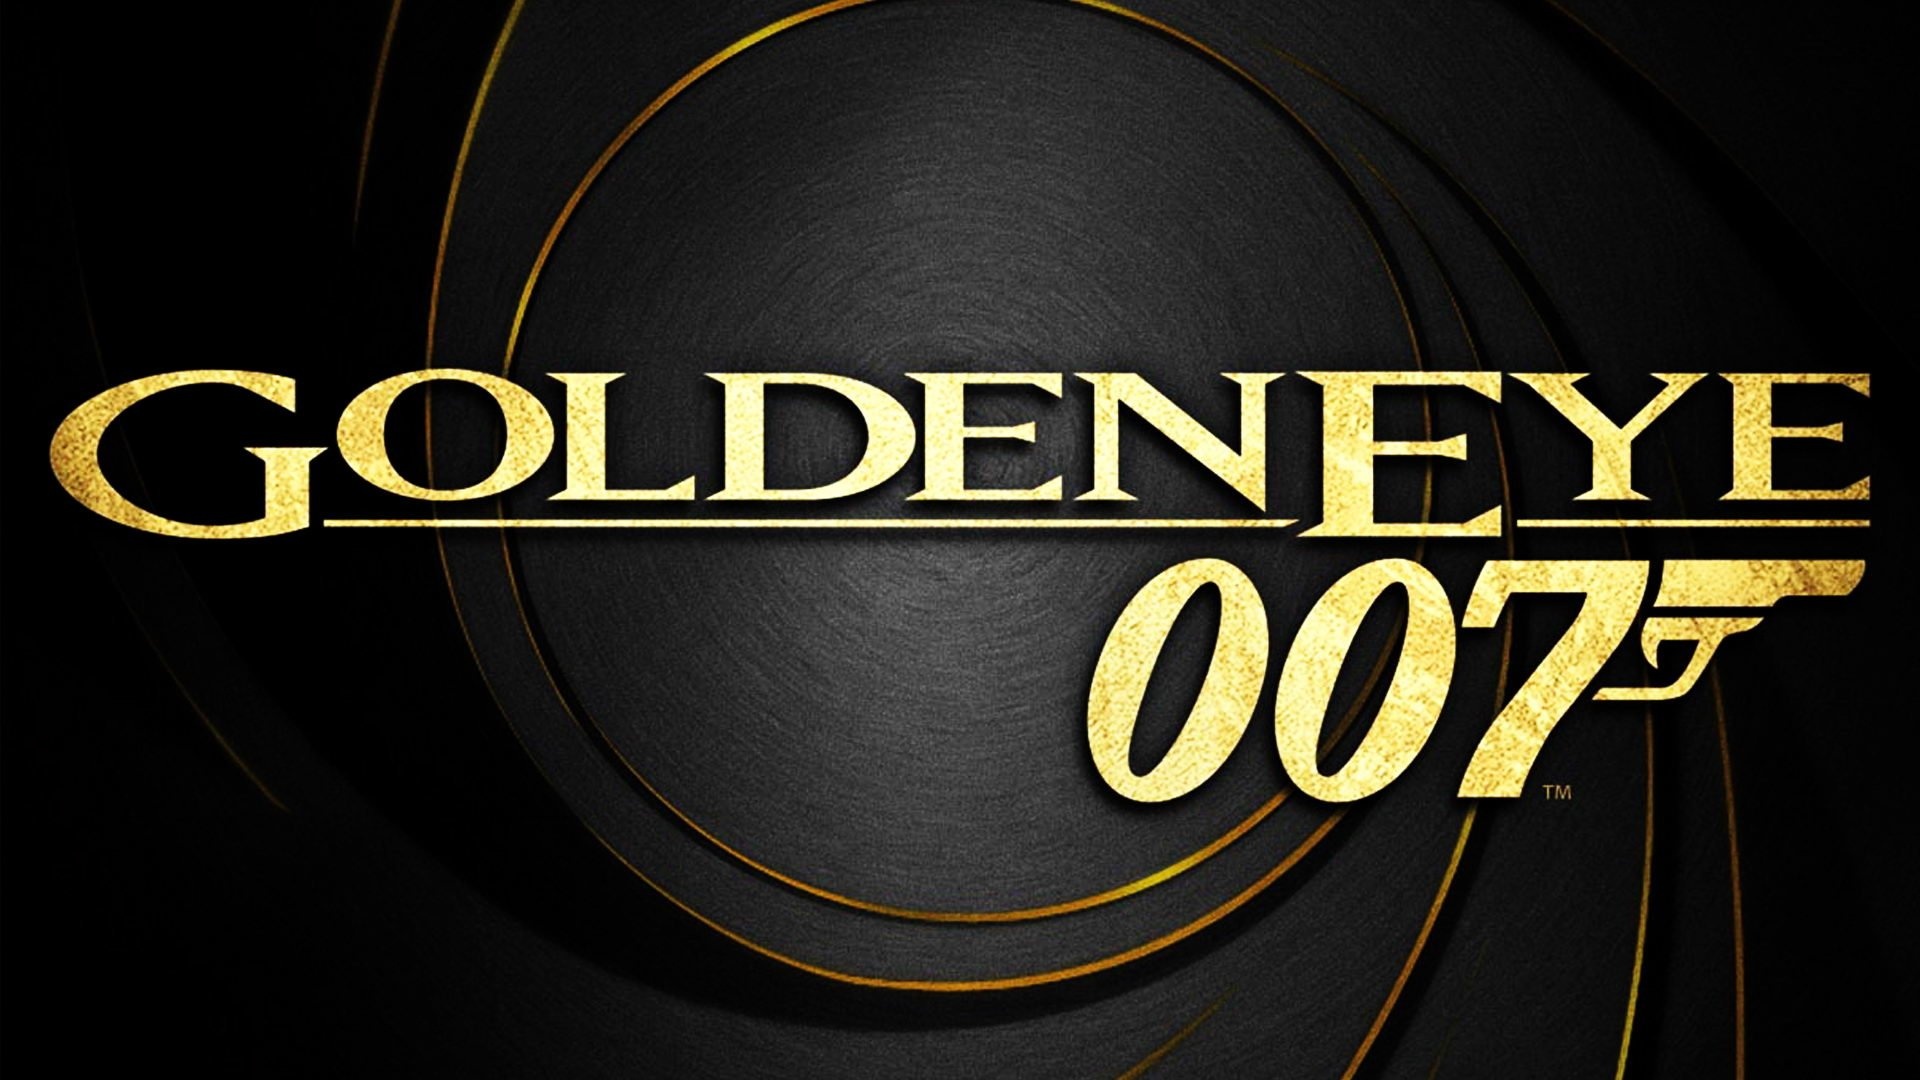 GoldenEye movie, 007, HD wallpaper, background image, 1920x1080 Full HD Desktop